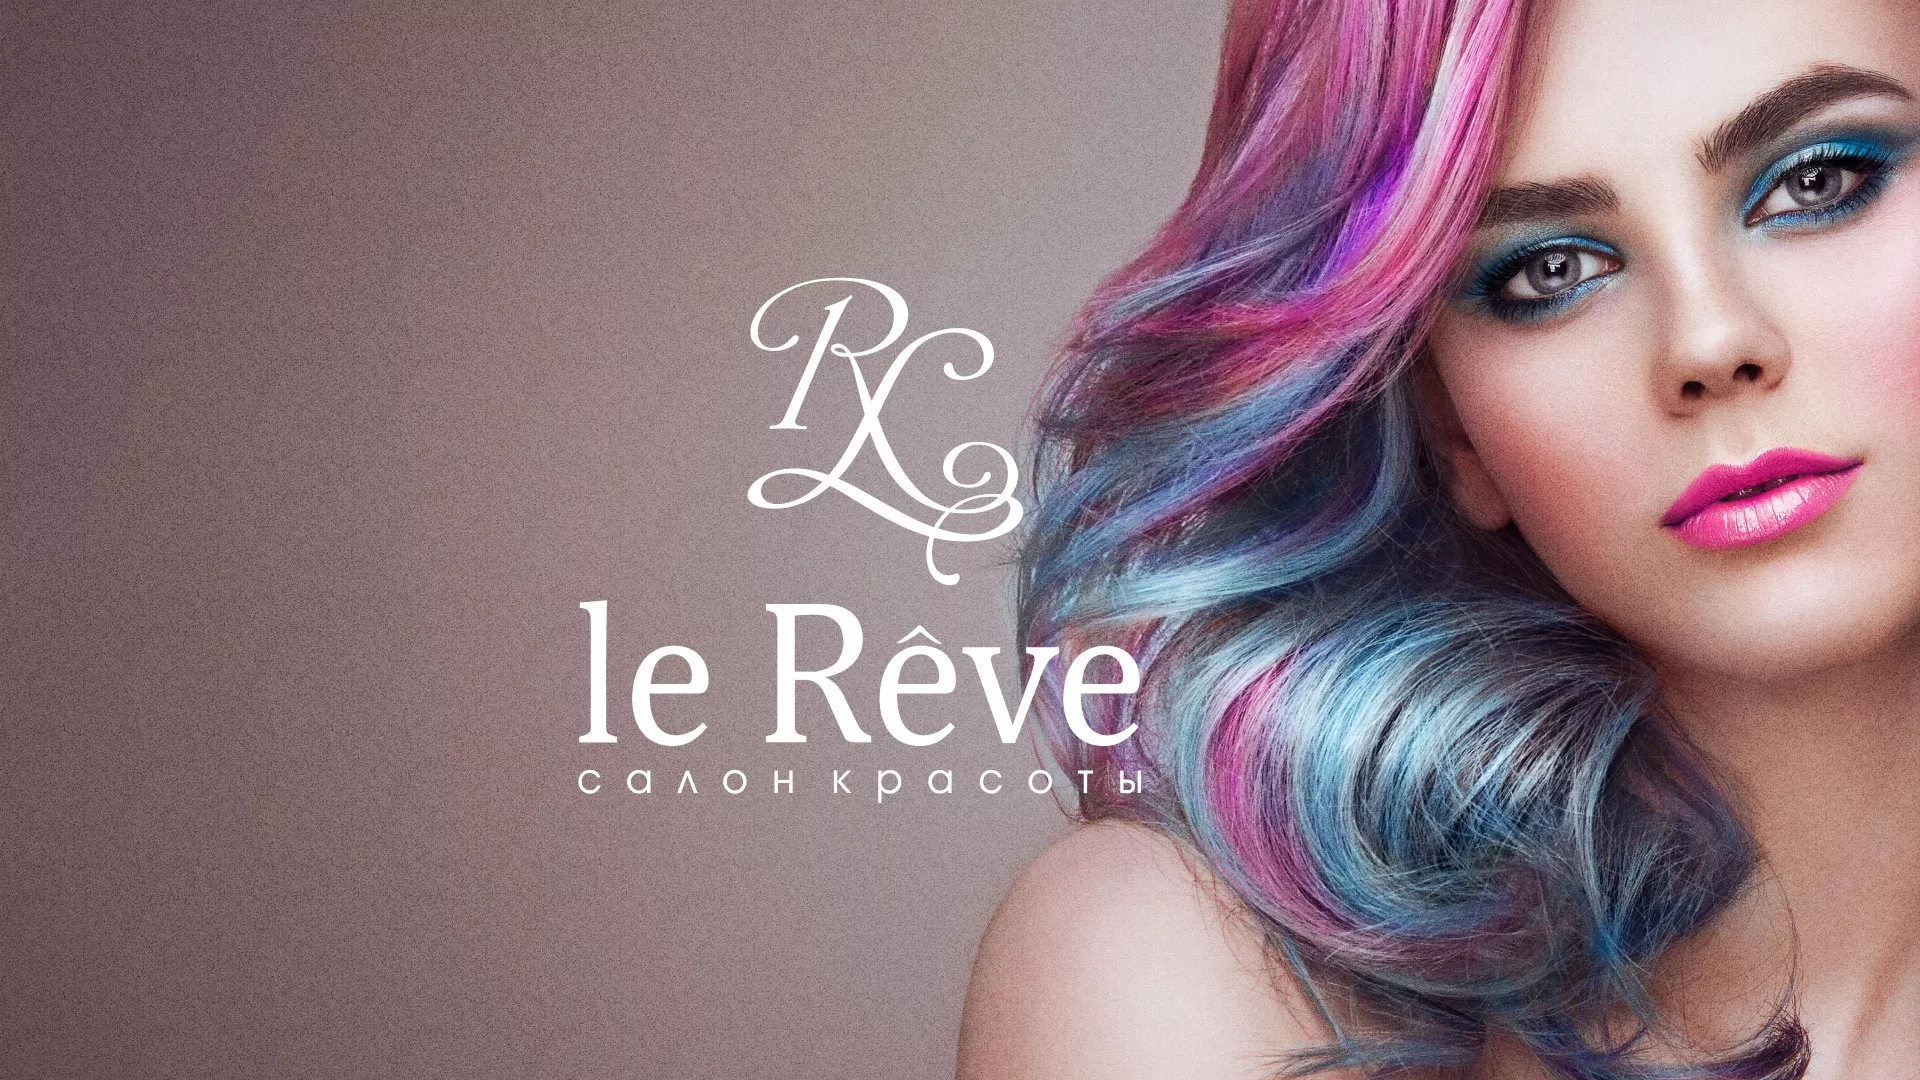 Создание сайта для салона красоты «Le Reve» в Юрюзани